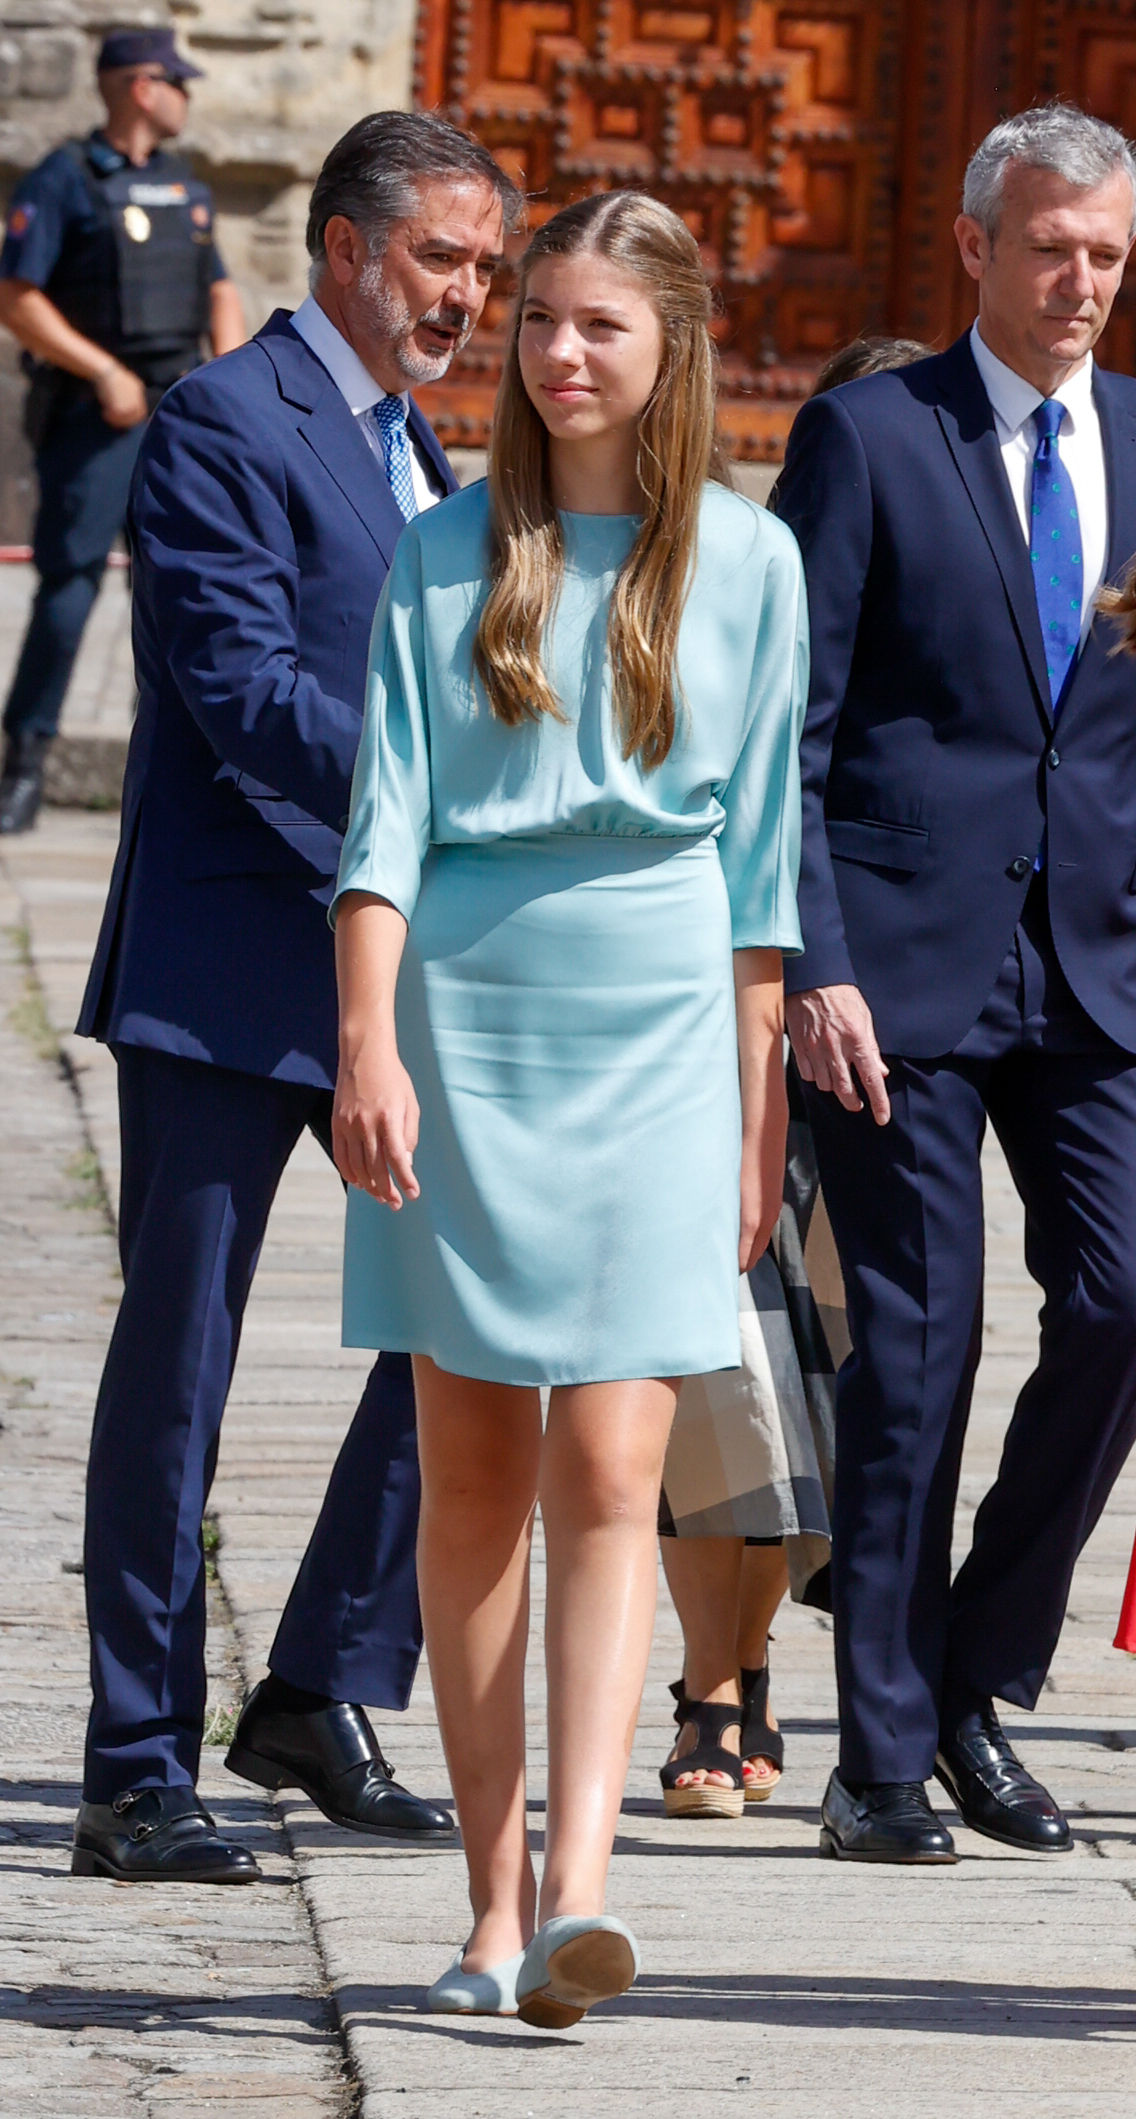 Sofía escogía un vestido en azul pastel.